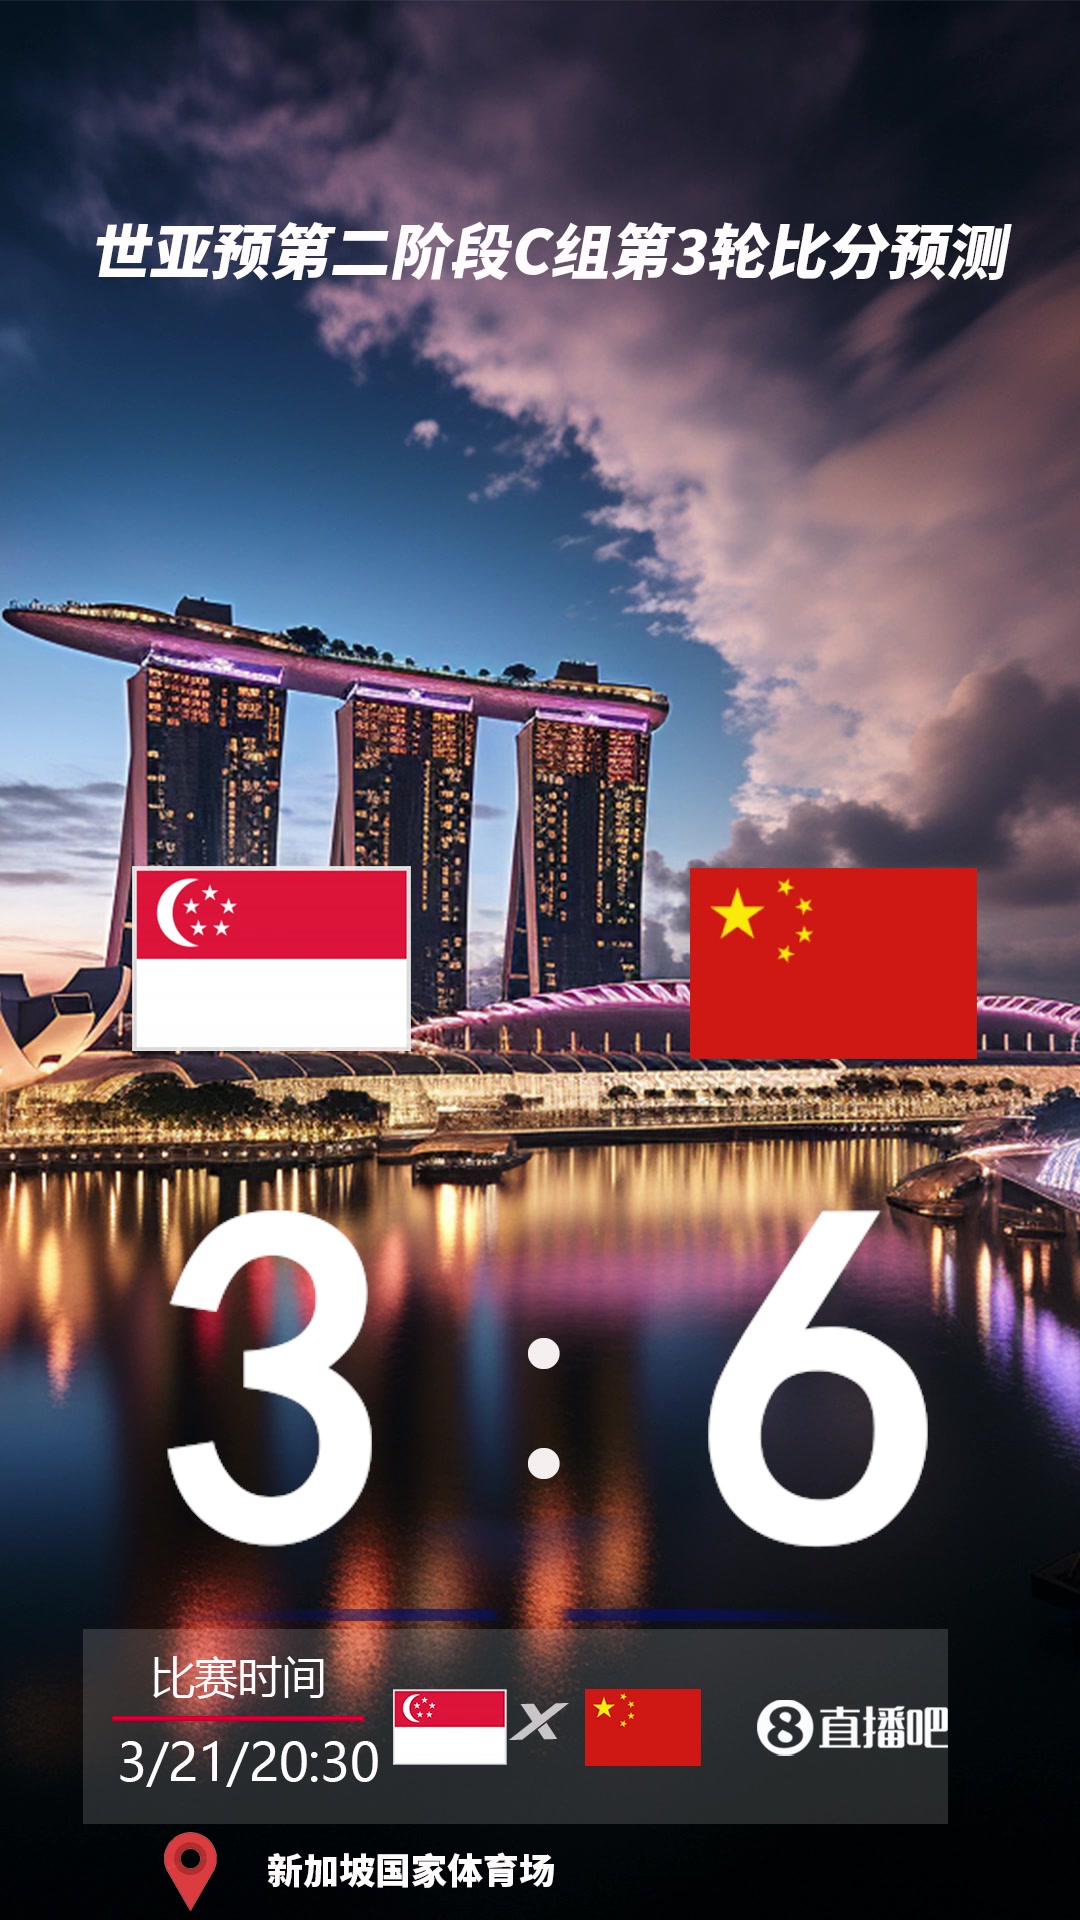 关键一战！截图预测国足vs新加坡比分